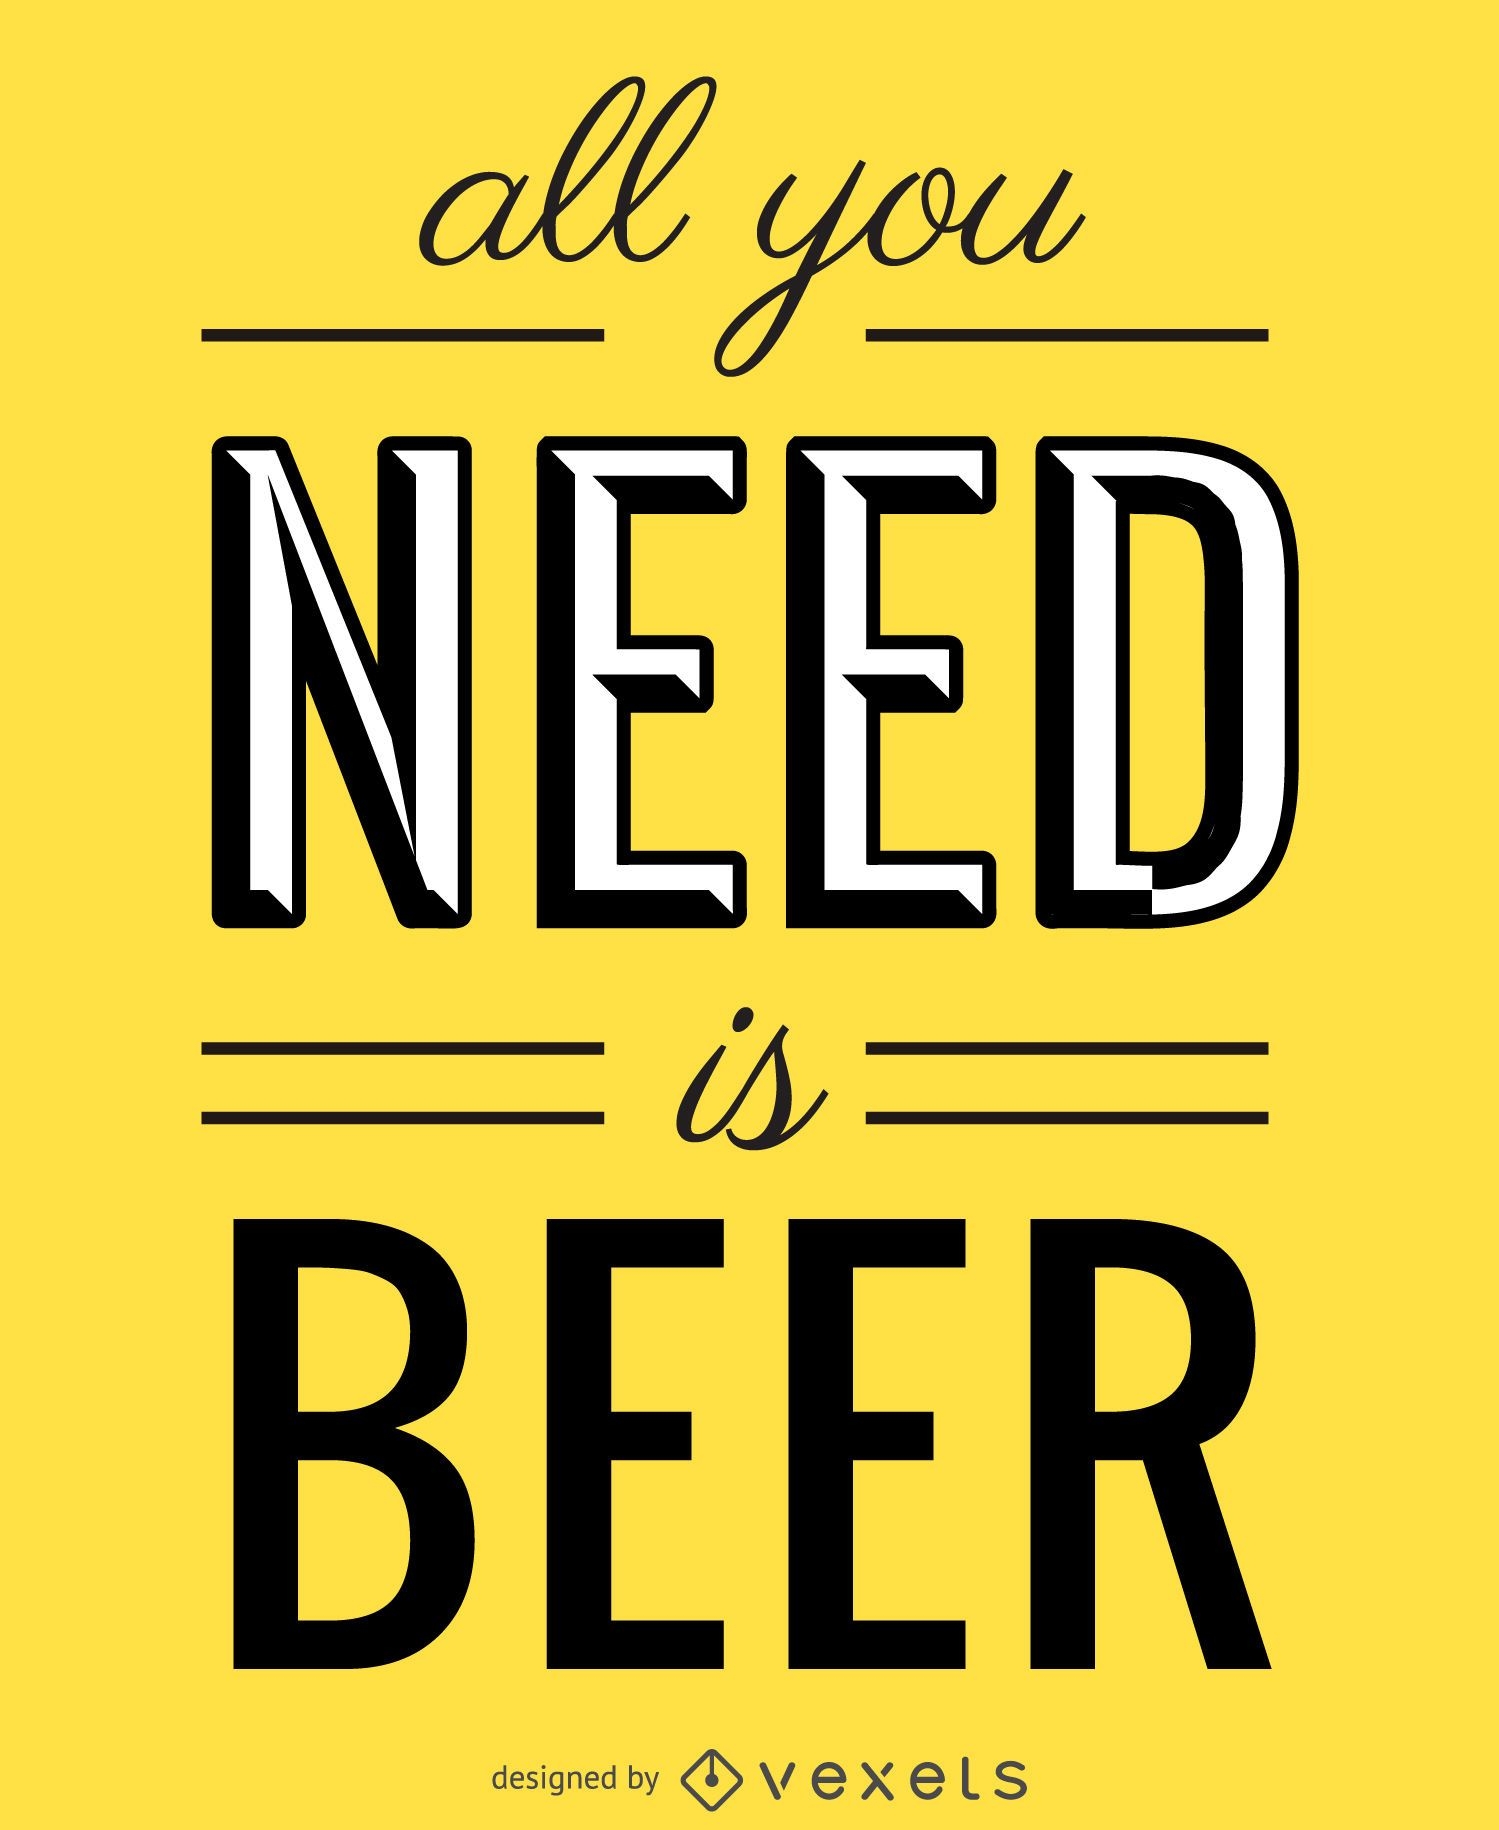 Todo lo que necesitas es cotización de cerveza